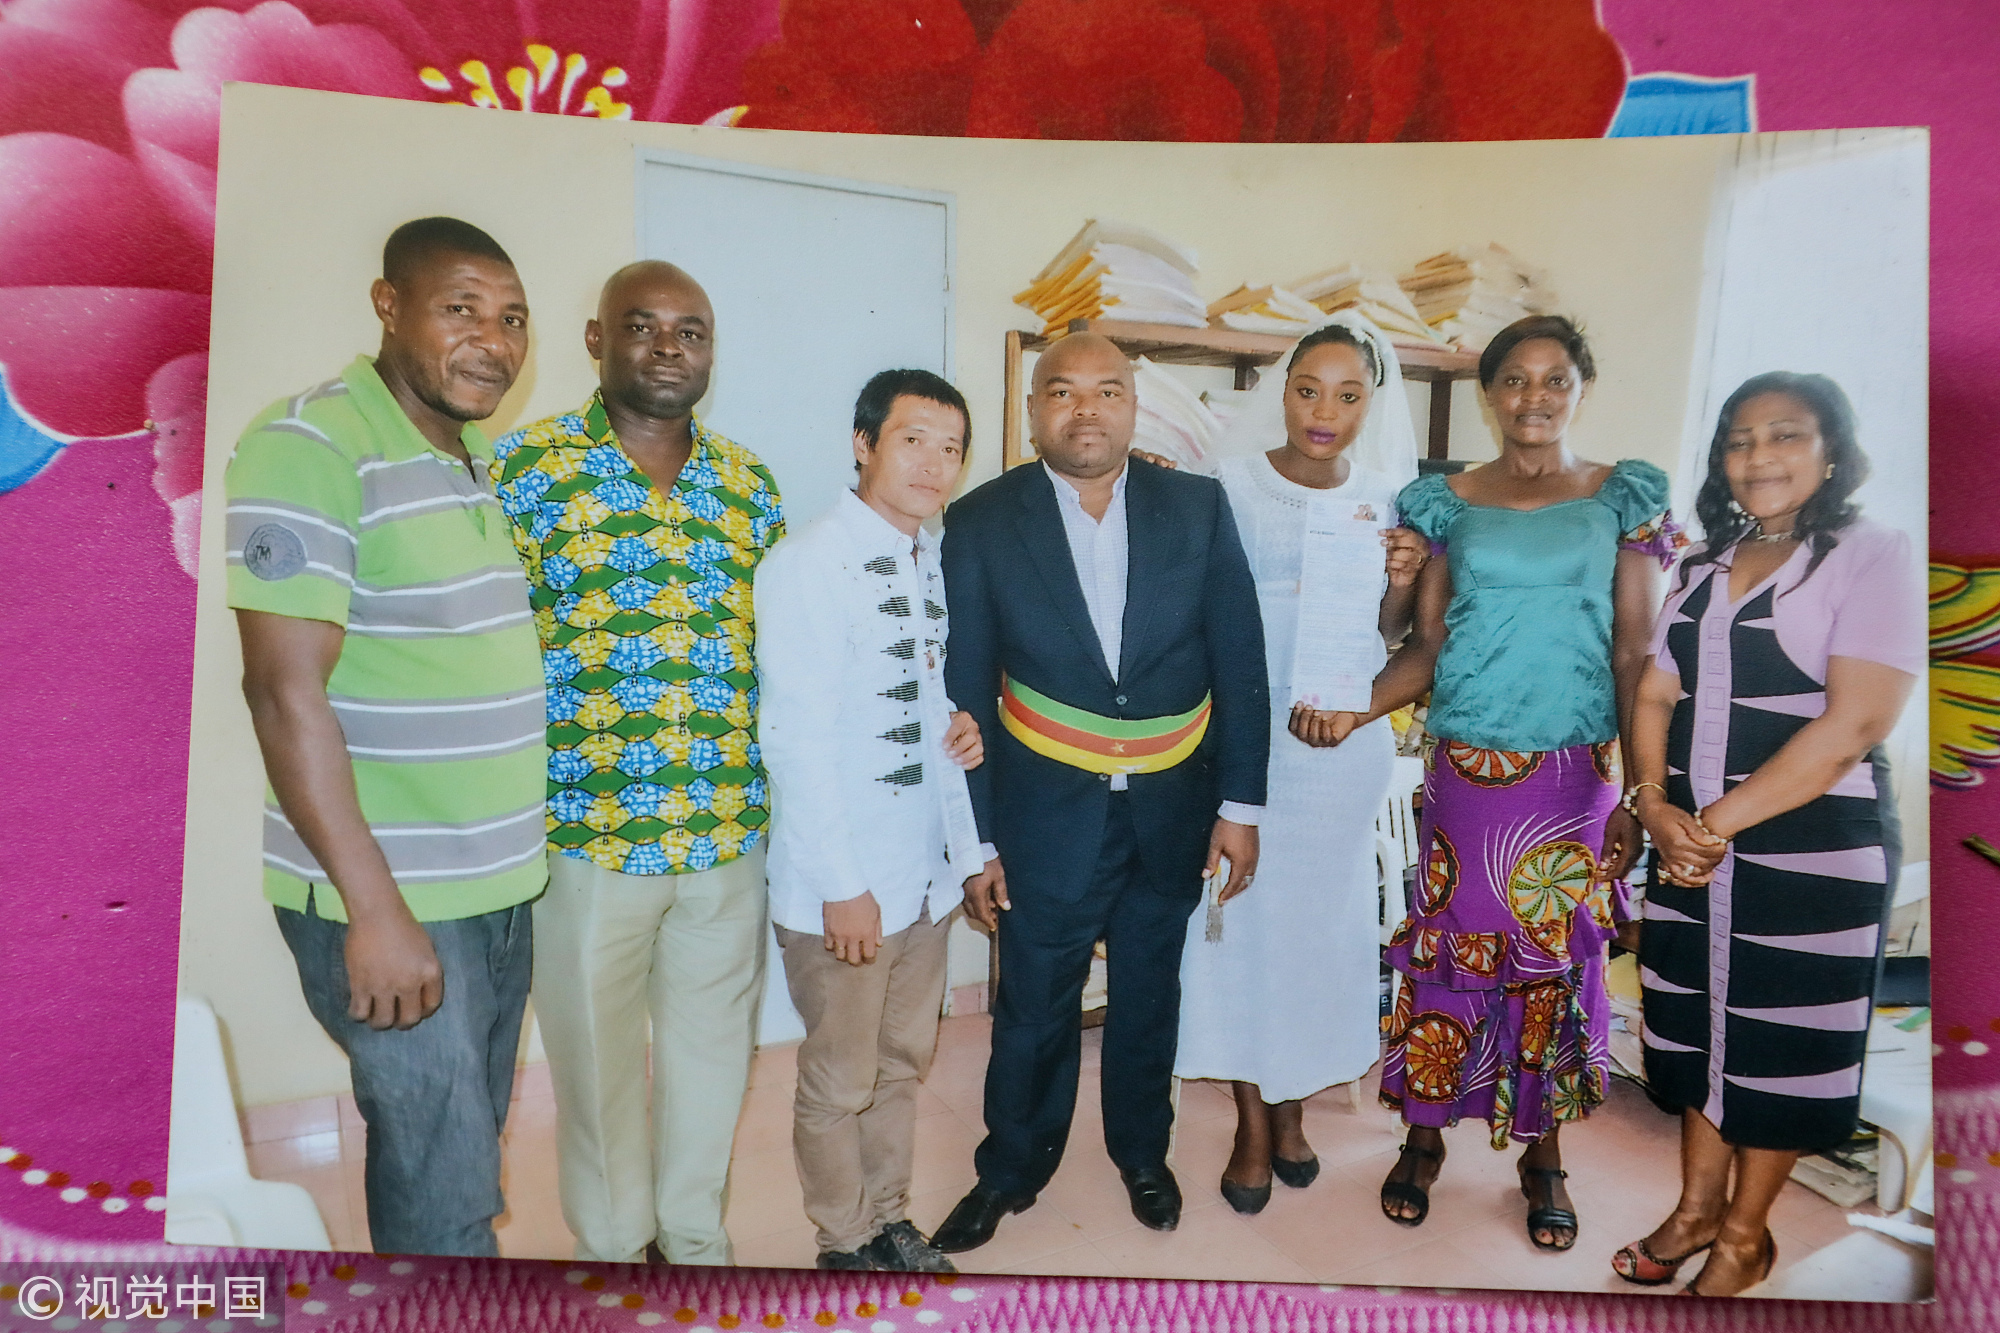 邹迁顺离异、桑德拉未婚，两个异国男女擦起了爱情的火花。经过中国驻喀麦隆大使馆认证后，2017年3月18日，邹迁顺和桑德拉在杜阿拉相关部门正式登记成为夫妻。按照当地人的习俗，他们举办了婚礼，并接受了桑德拉父母、亲友以及当地社区的祝福。